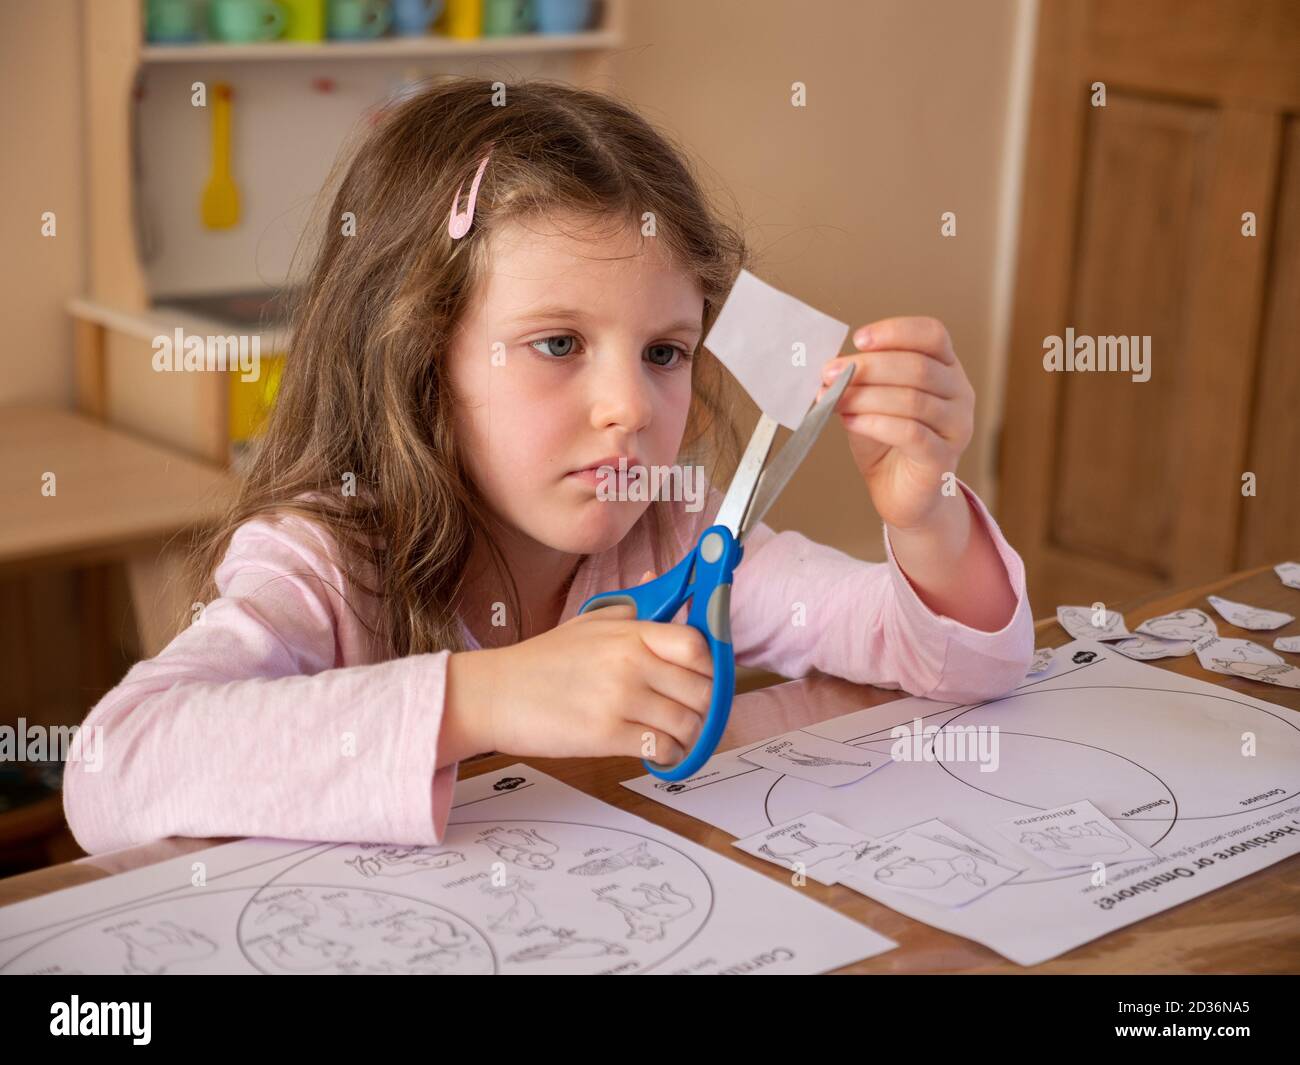 Niña de seis años usando tijeras para cortar fotos en papel para sus tareas escolares en casa, Reino Unido Foto de stock